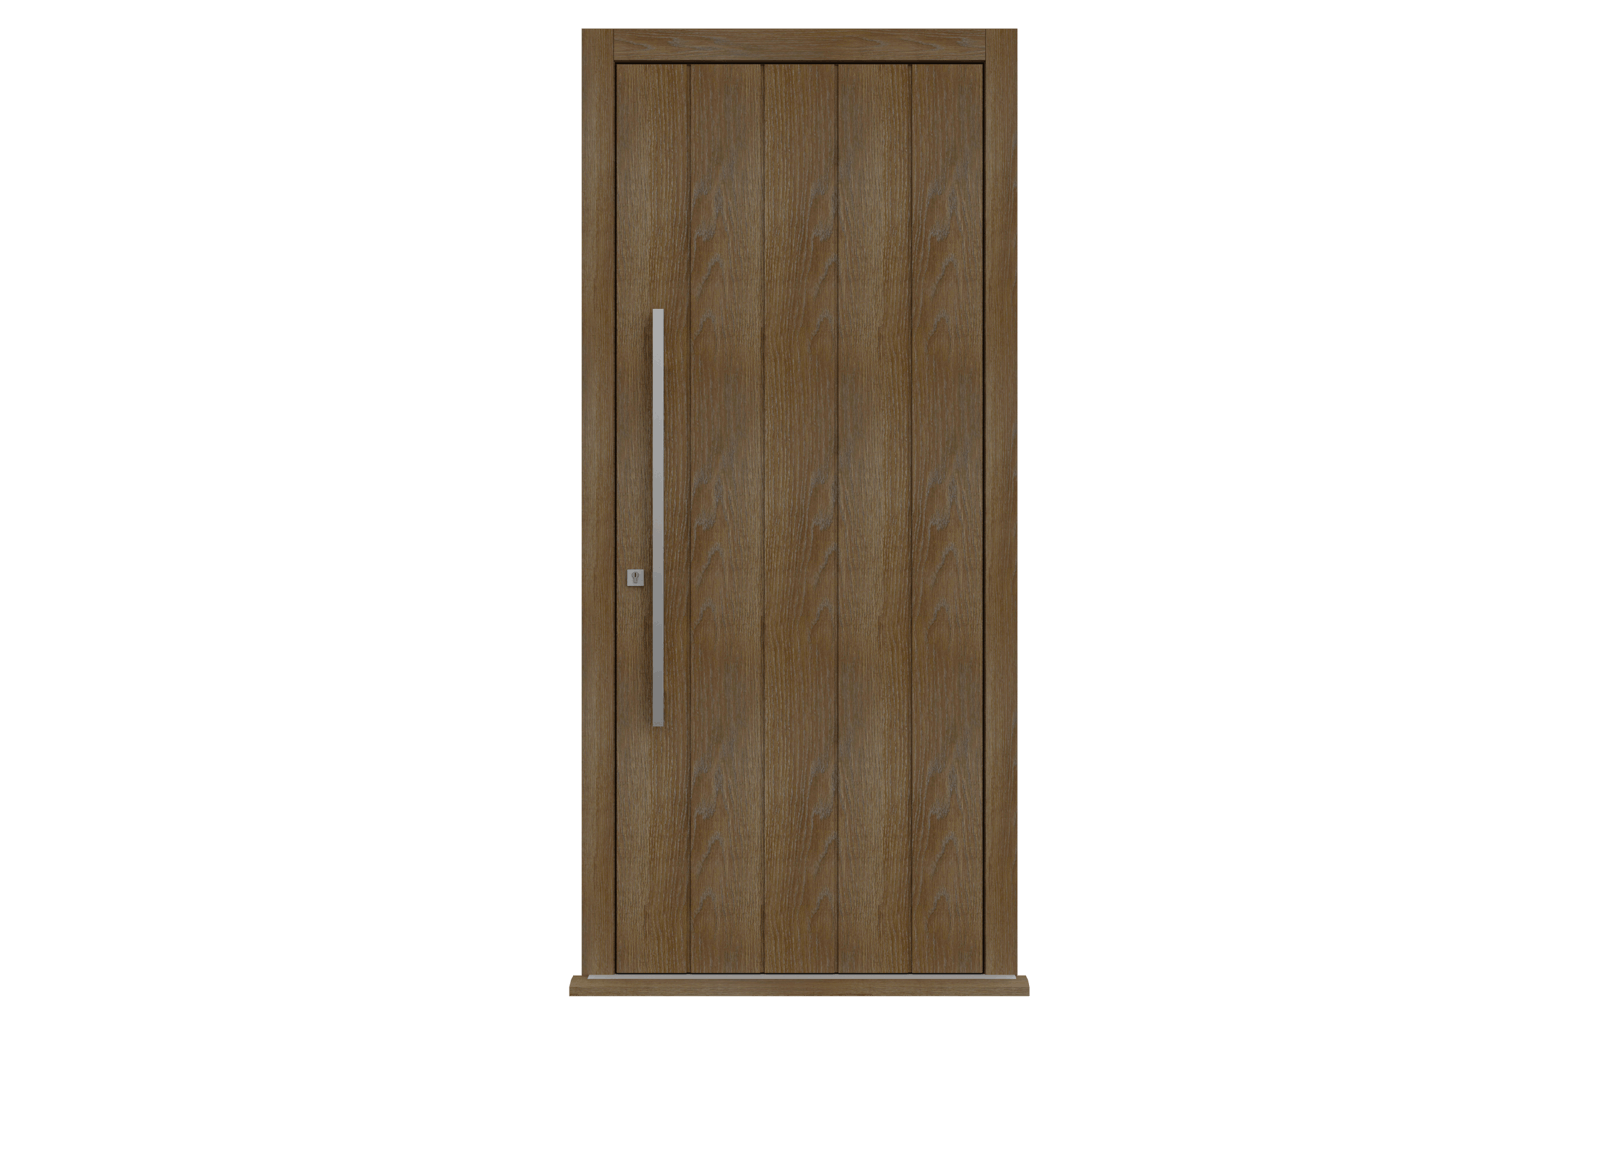 Walnut Stained Oak Single leaf front door -  Pichola V by Deuren